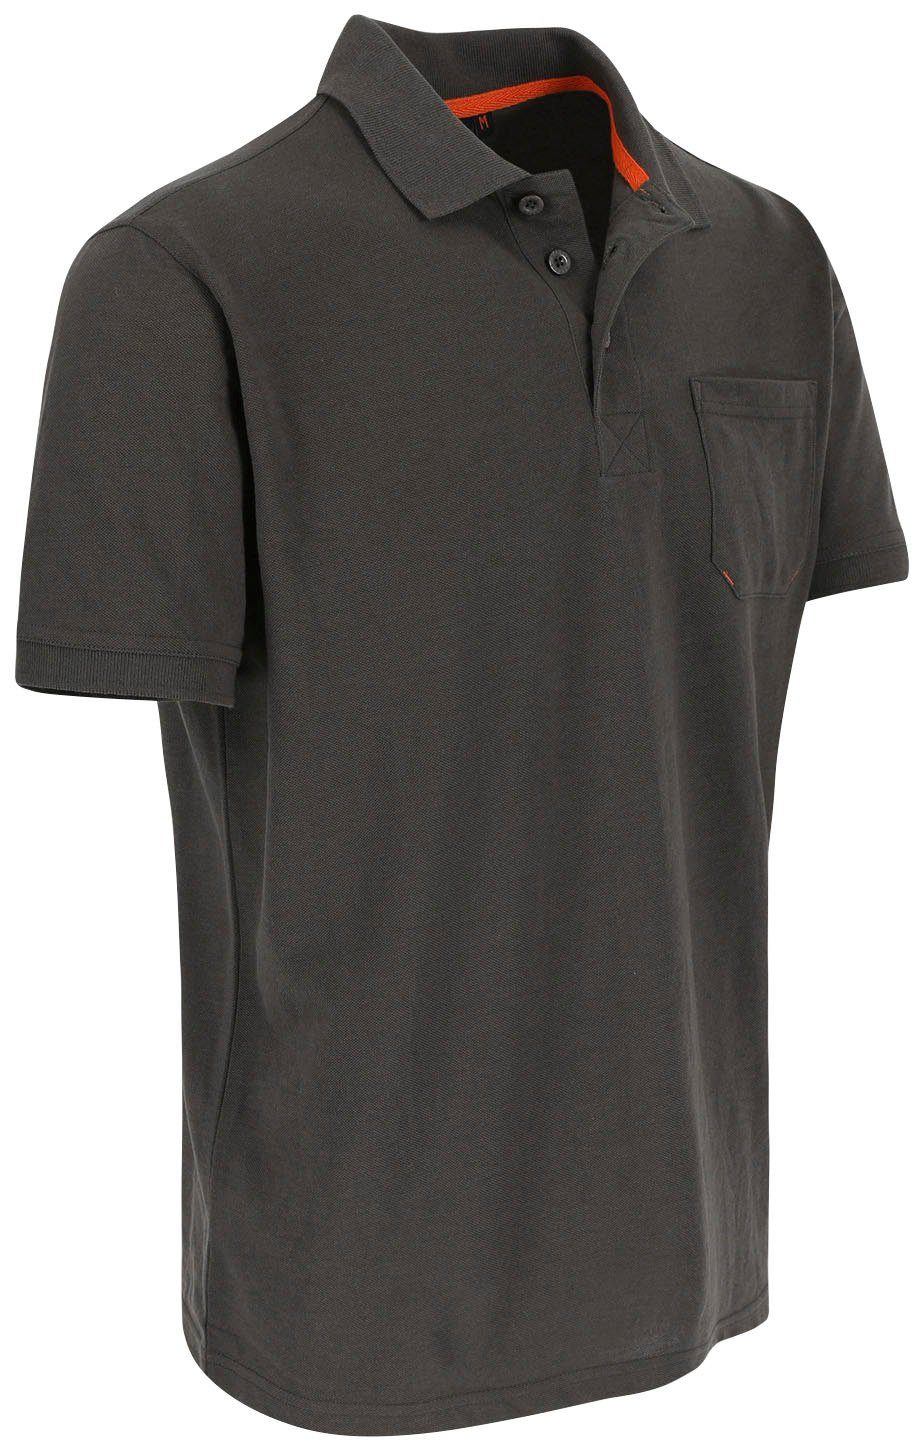 Kurzärmlig grau 1 Poloshirt und Herock verschiedene Brusttasche, Rippstrick-Kragen Polohemd Farben Leo Bündchen,